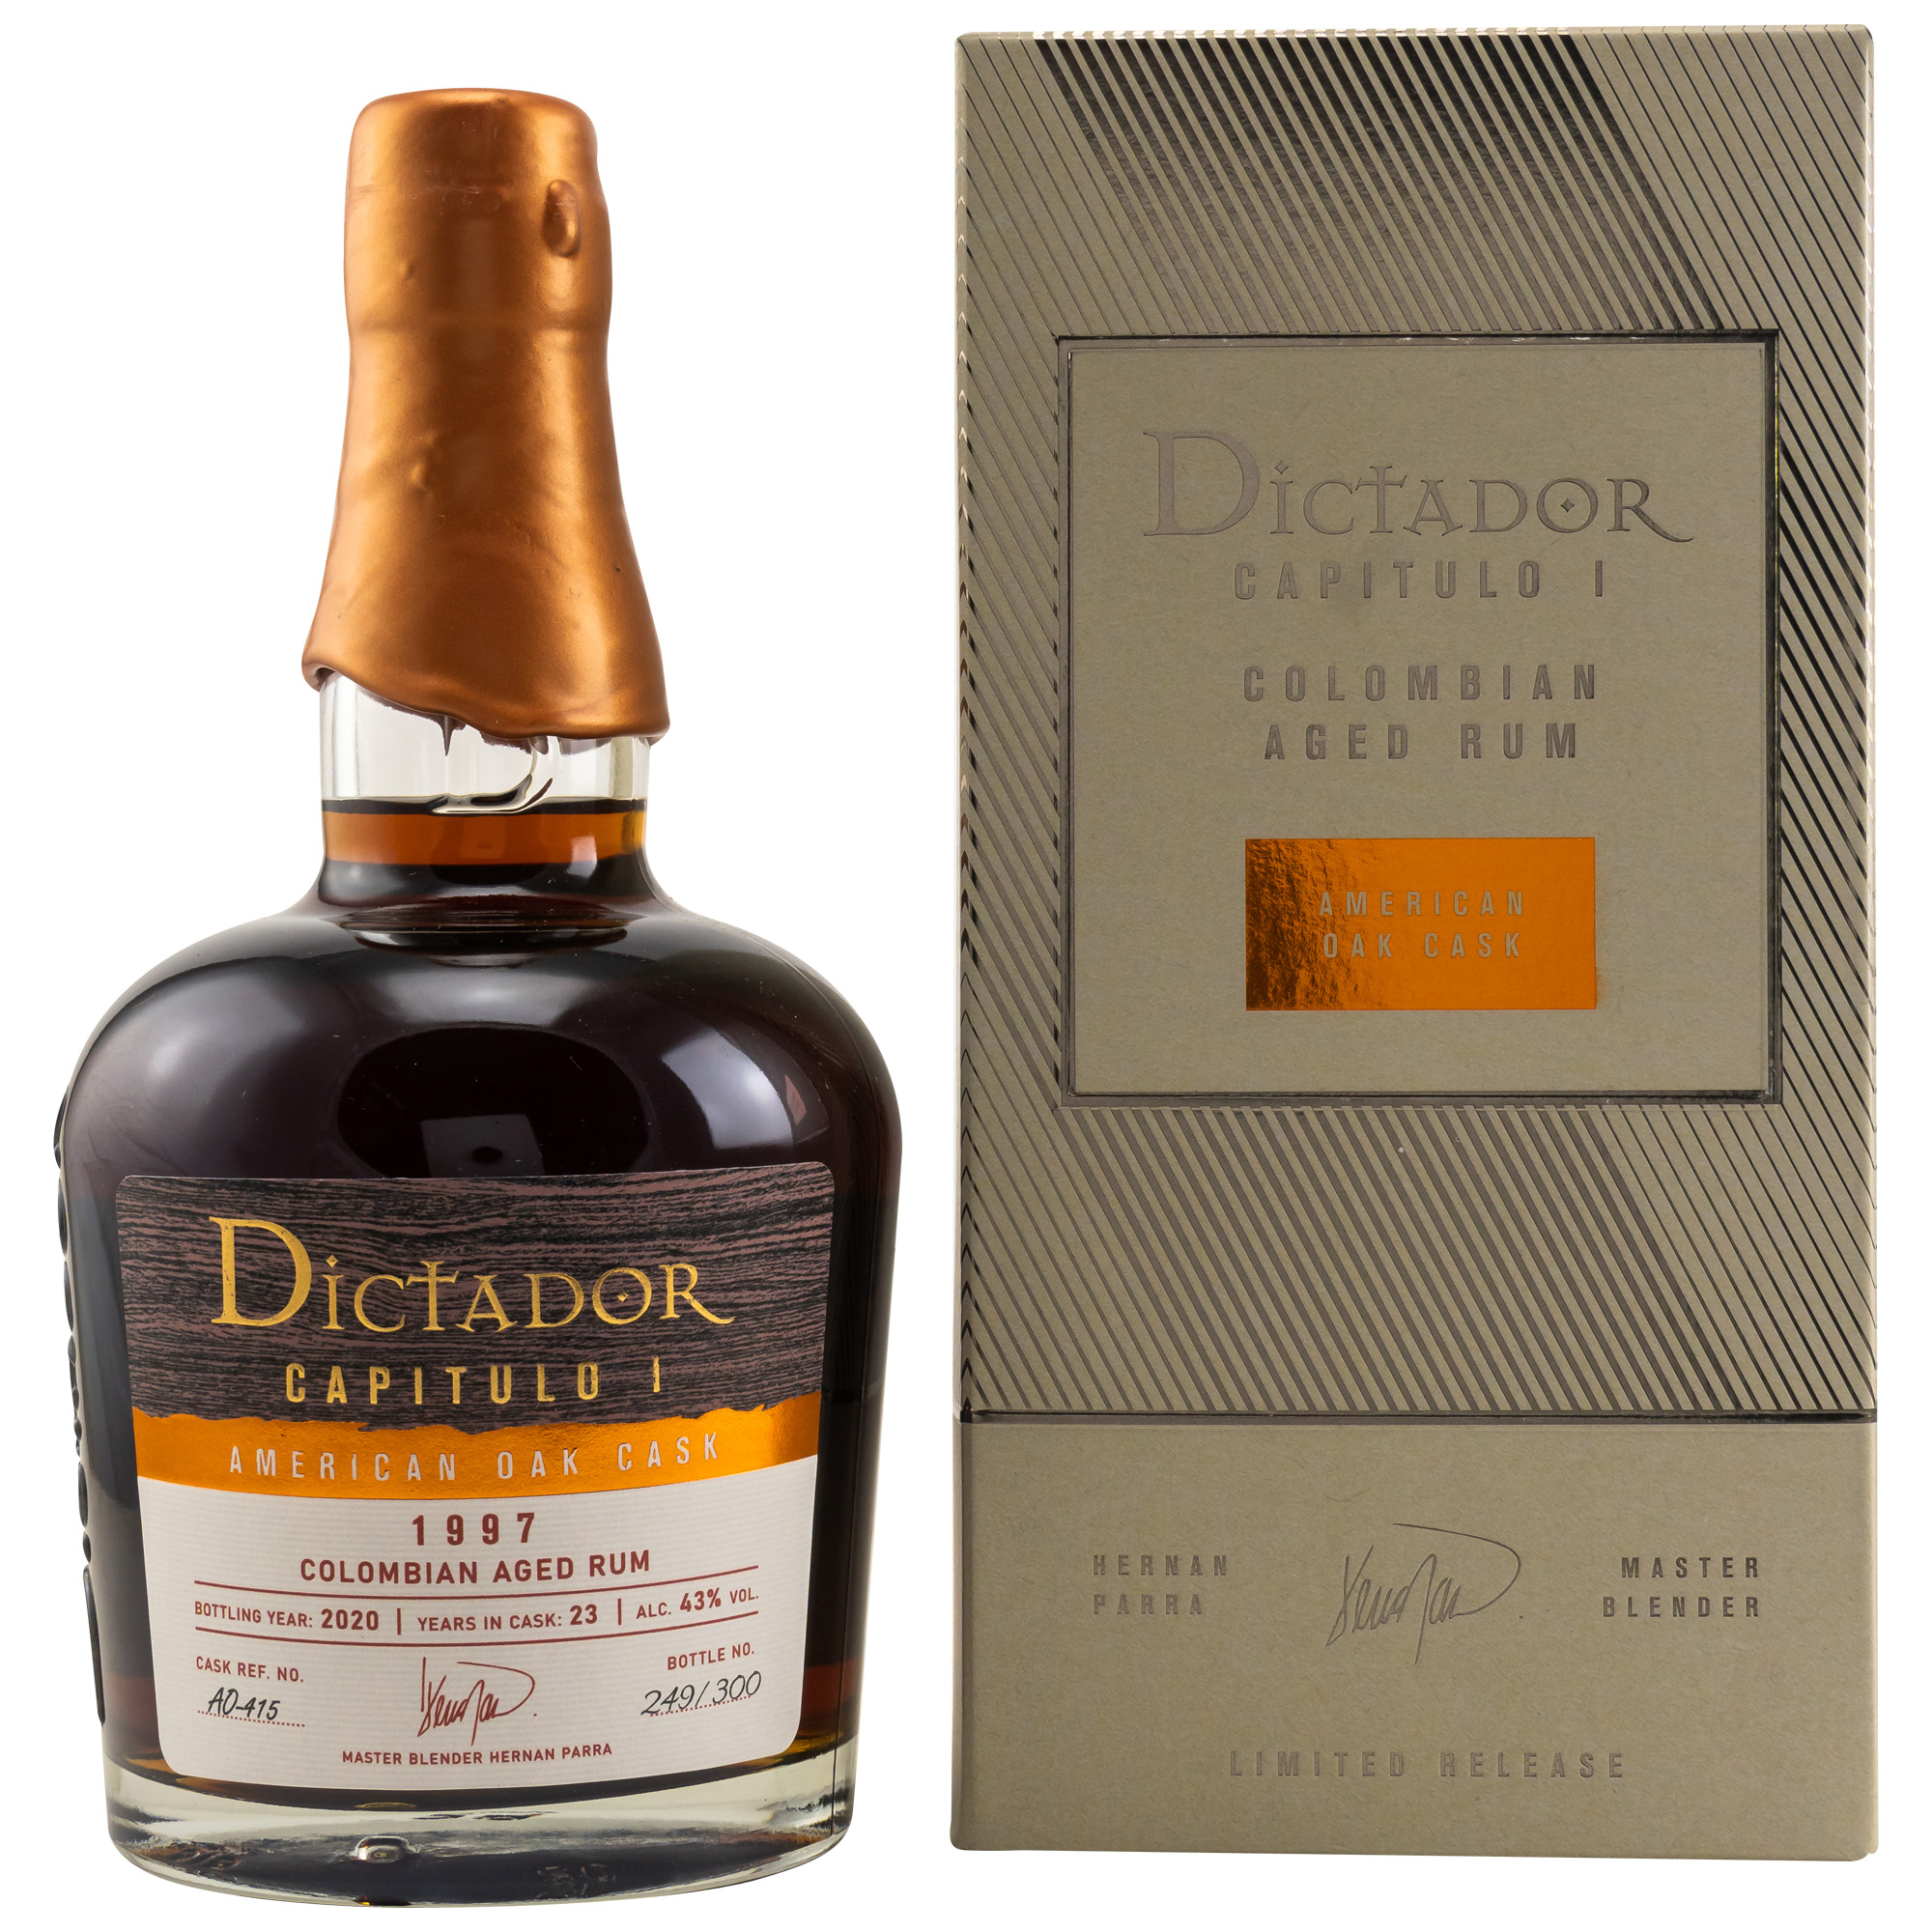 Dictador Capitulo I 1997/ 23 Jahre American Oak Cask Rum / 43% Vol. 0,7 ltr.